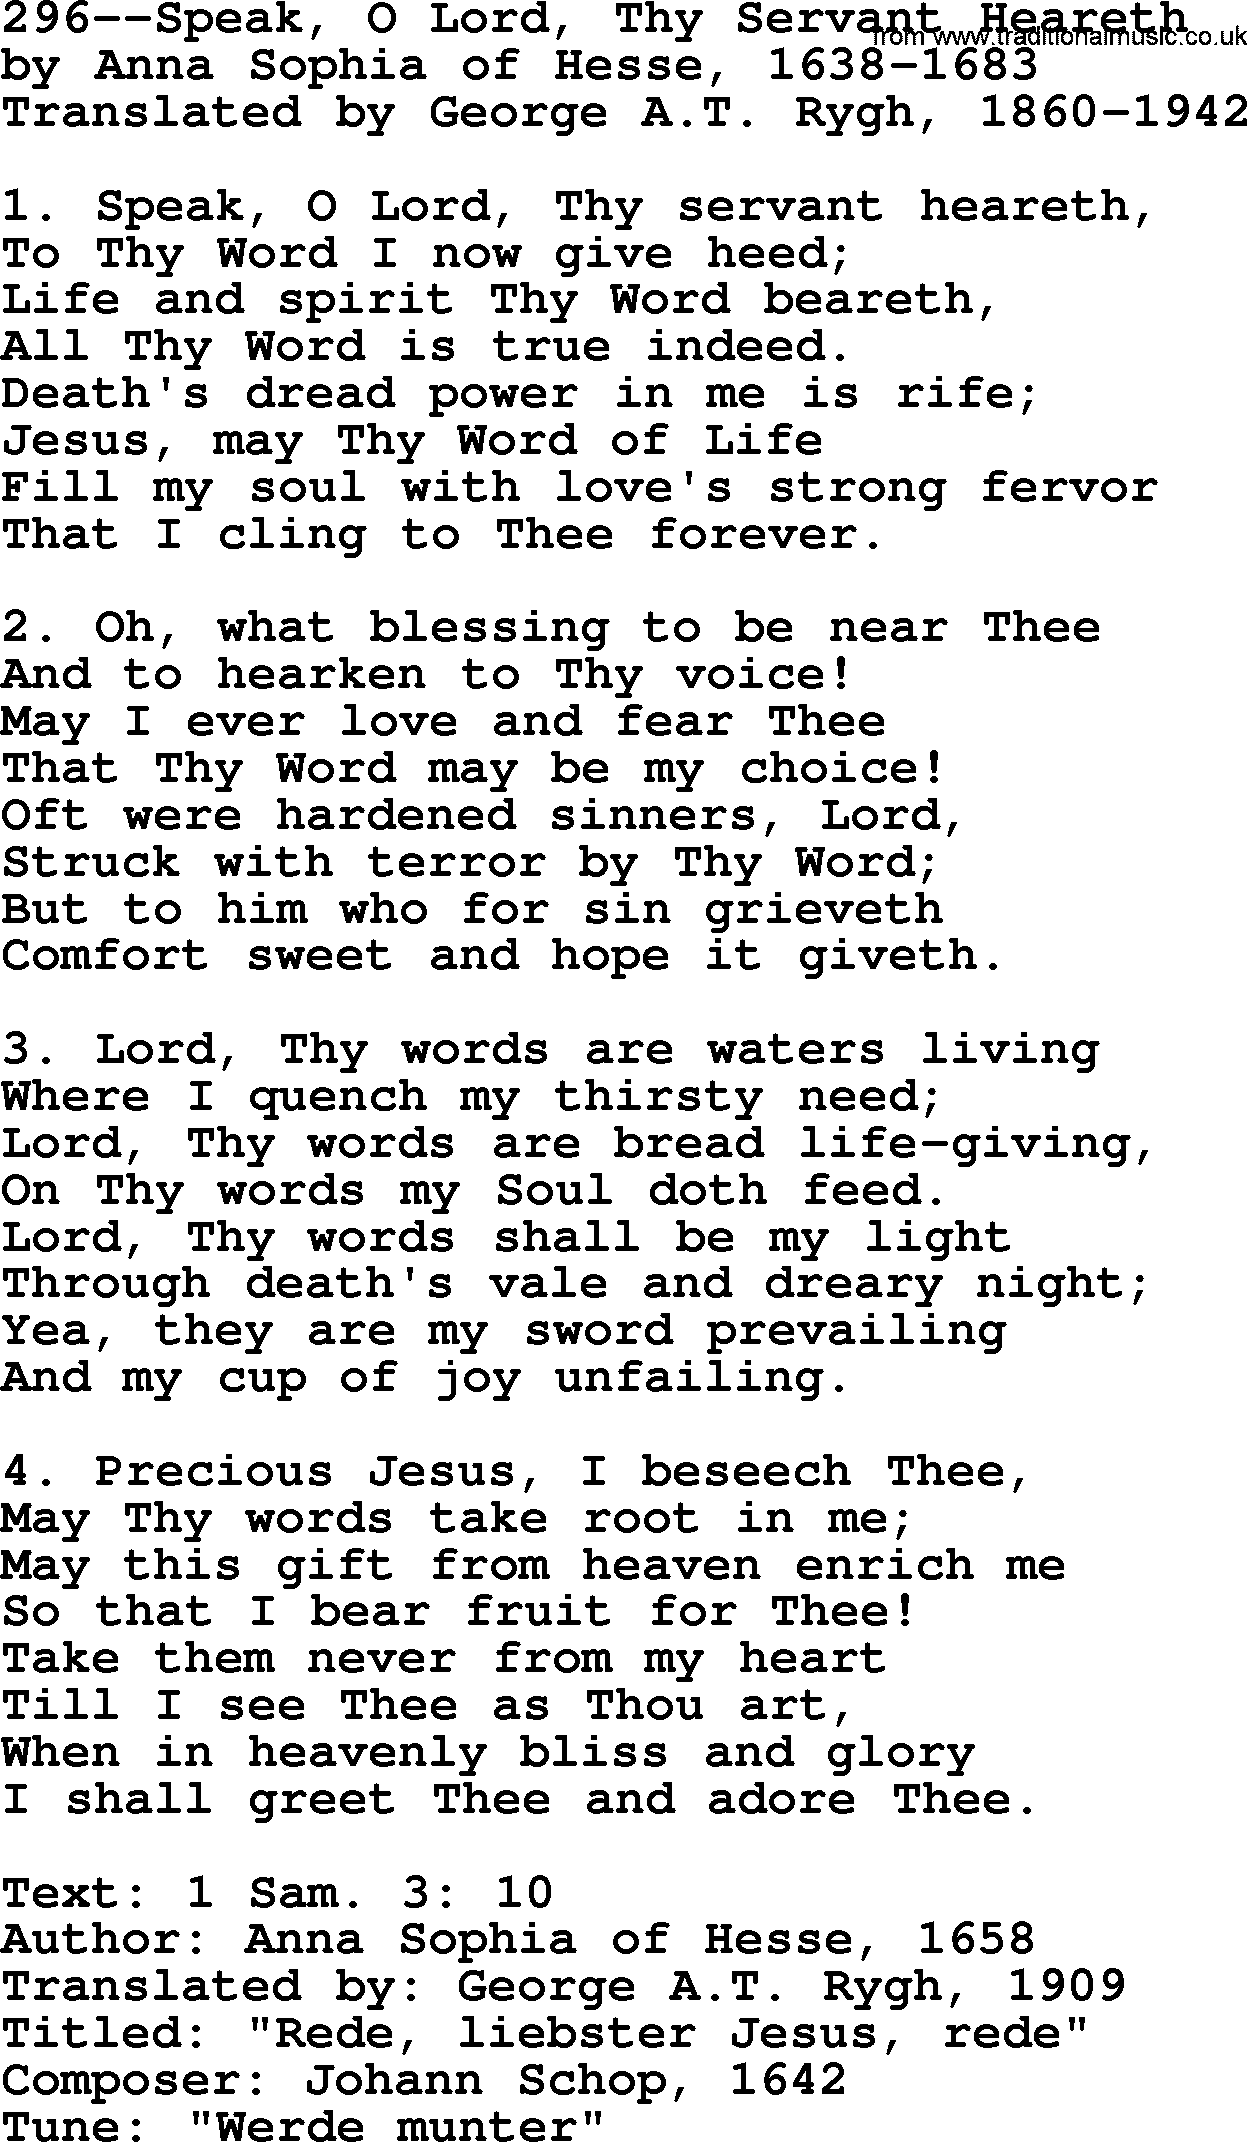 Lutheran Hymn: 296--Speak, O Lord, Thy Servant Heareth.txt lyrics with PDF